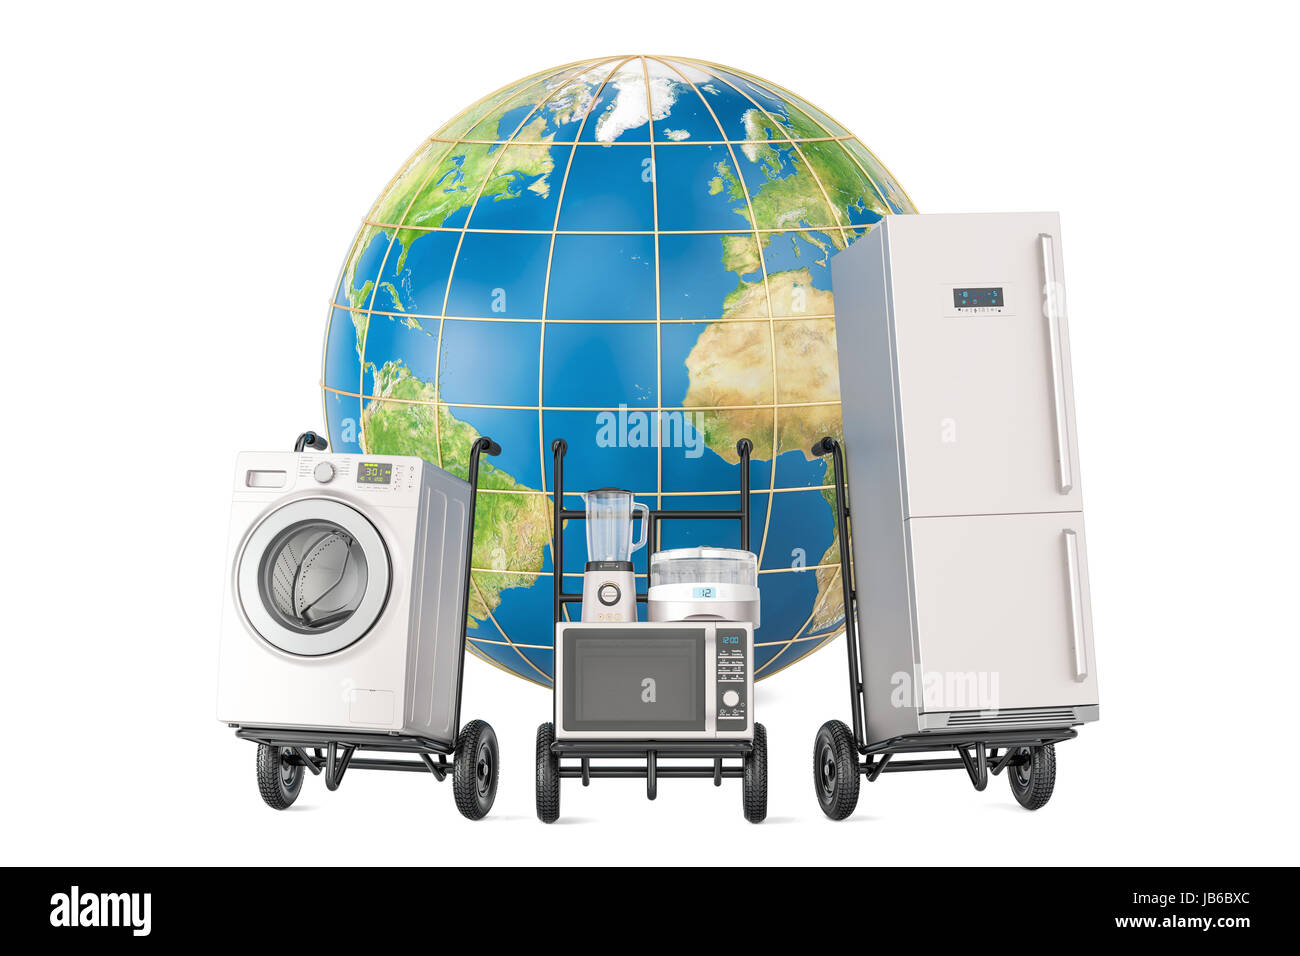 Commercial Mondial et la livraison des appareils de cuisine, 3D Rendering Banque D'Images